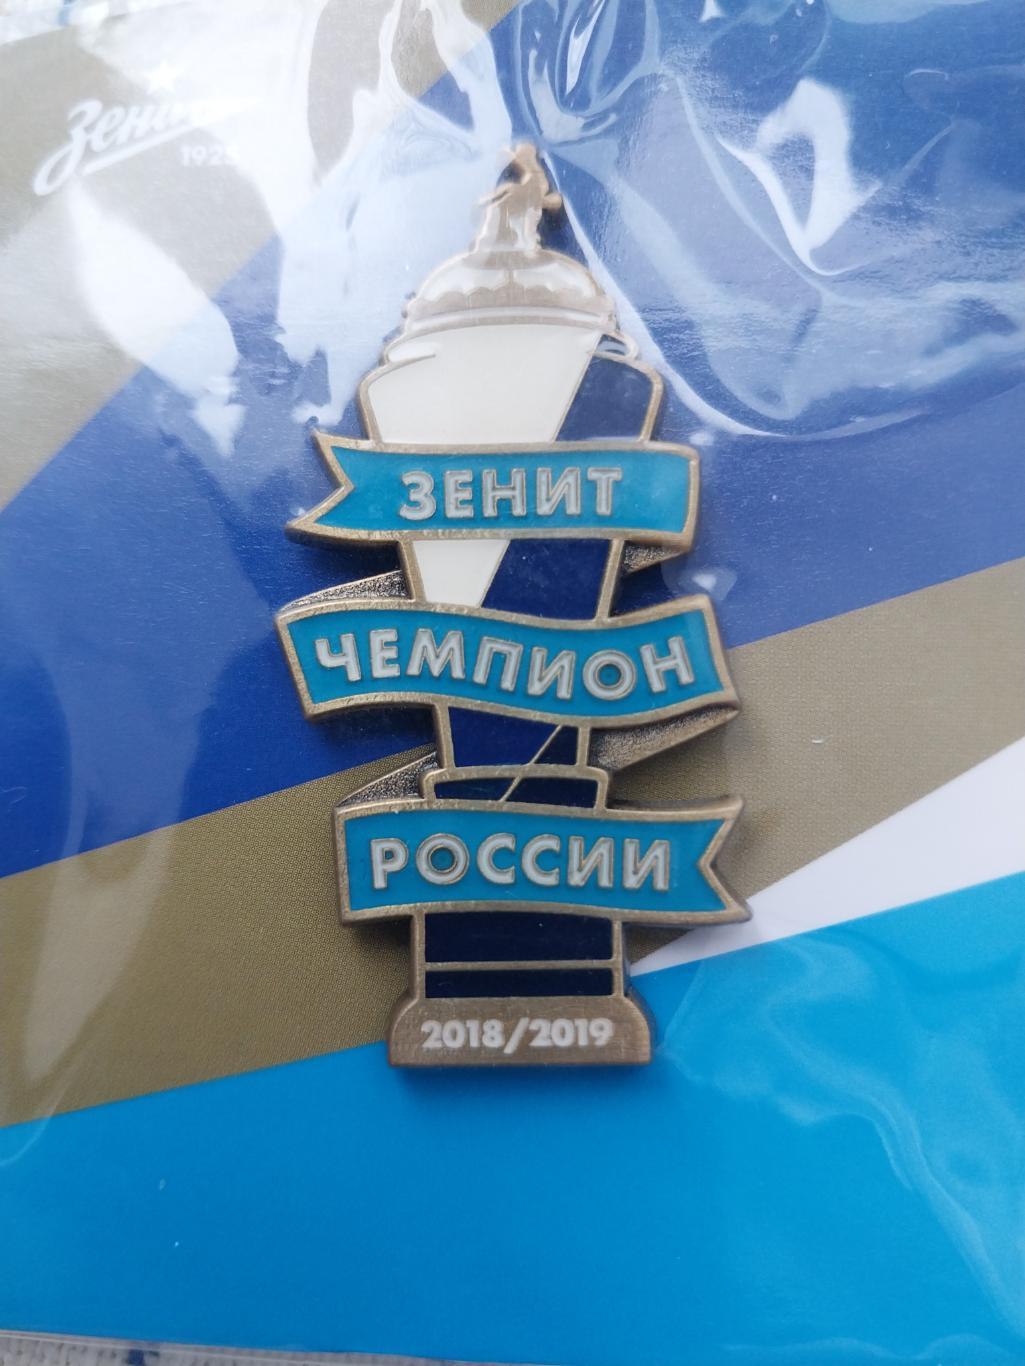 Зенит - чемпион России 2018-2019